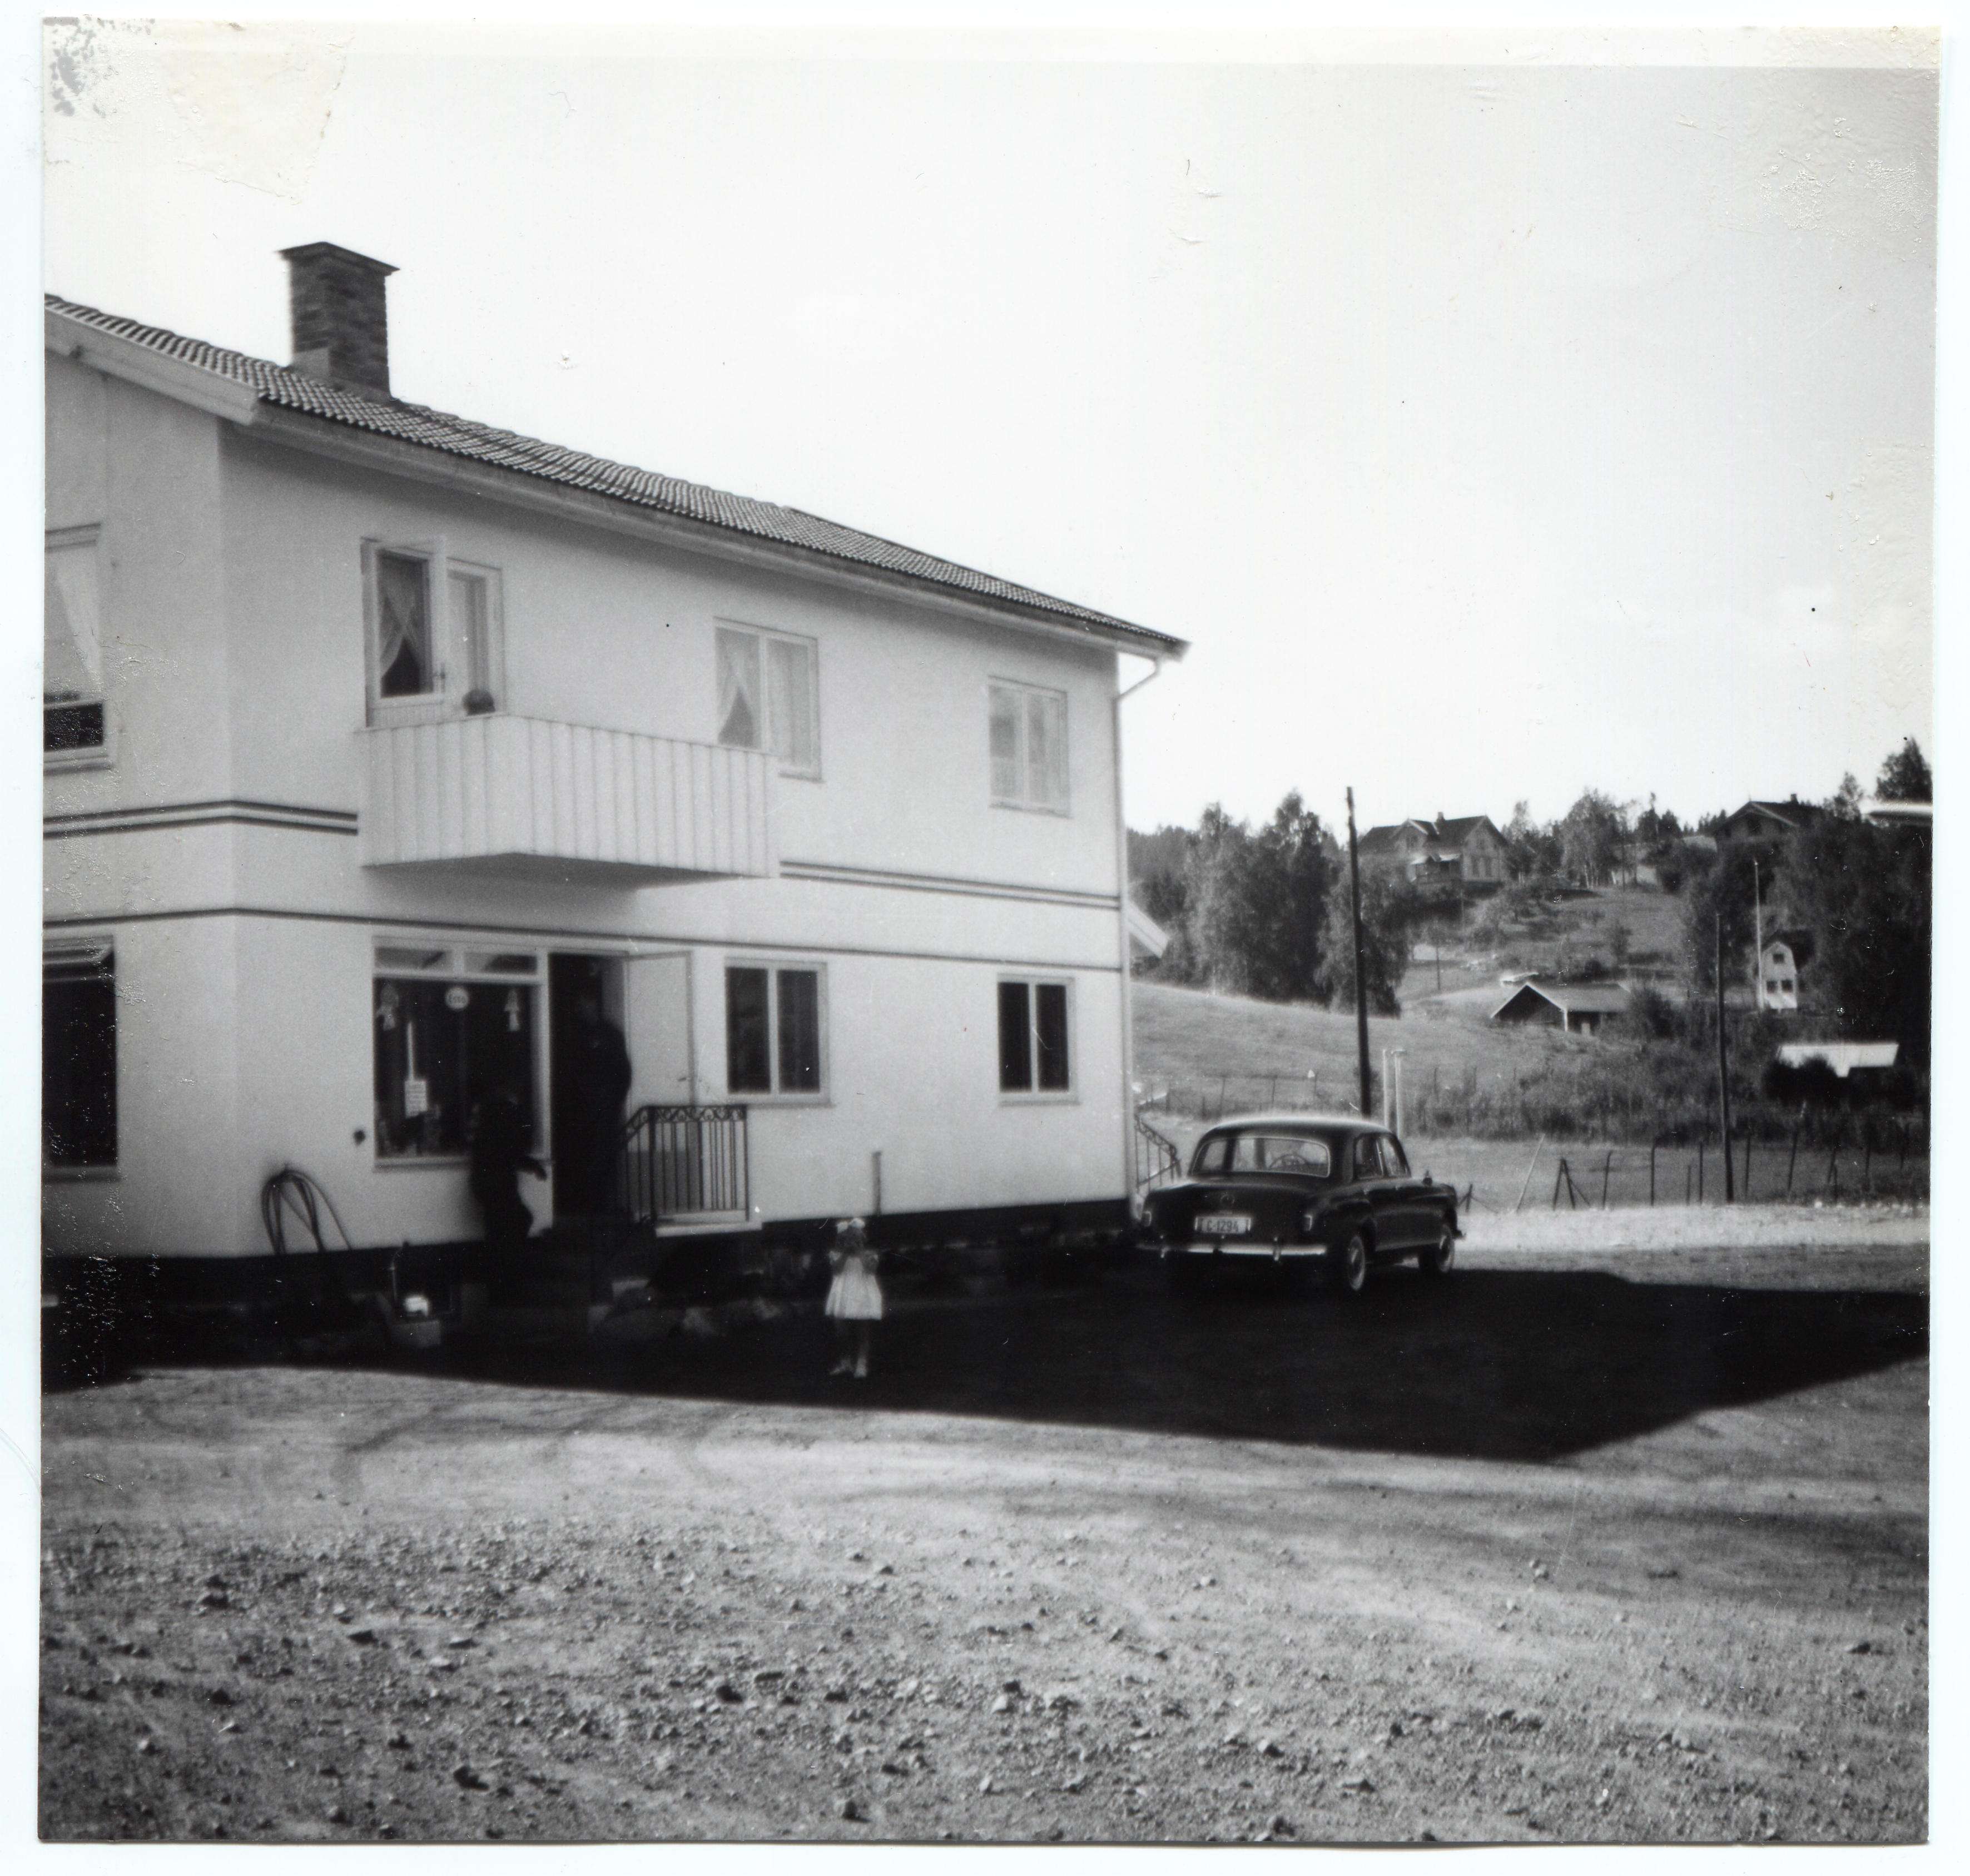 Bensinstasjon. At the beginning of the gas station, Oscar Bakkelund. Åpnet juli 1958.